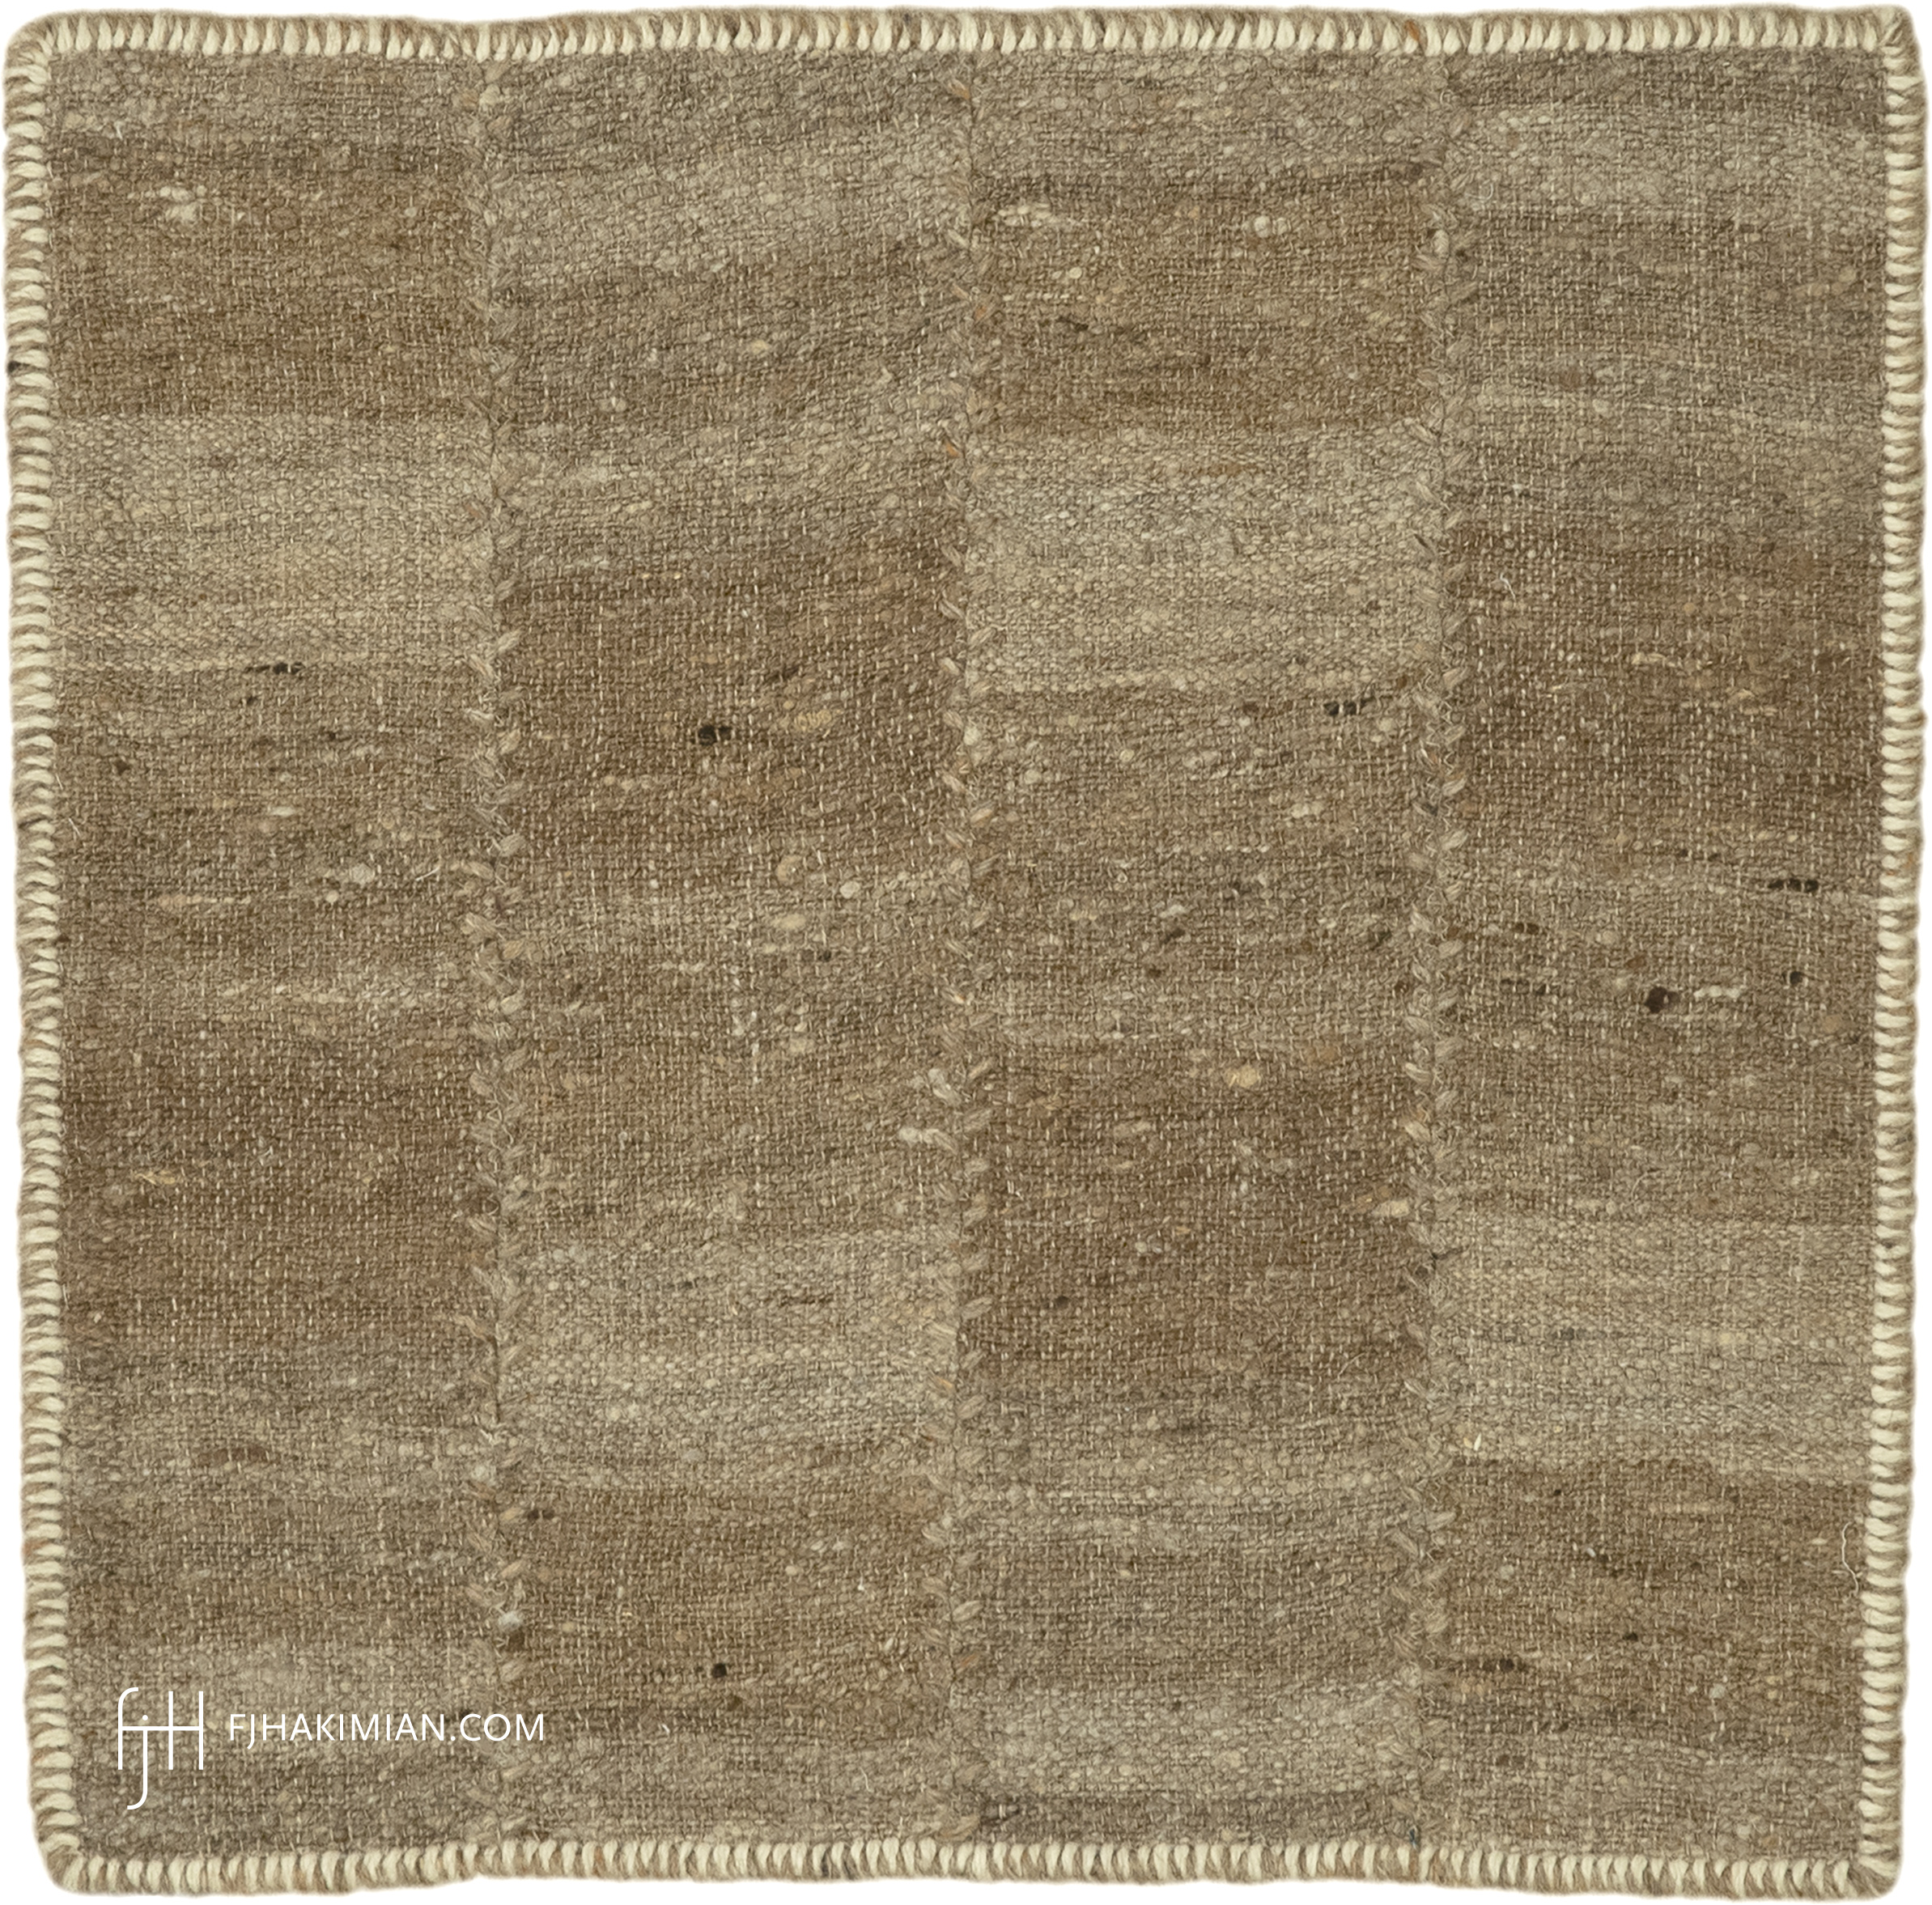 FJ Hakimian | 77156 | Custom Carpet